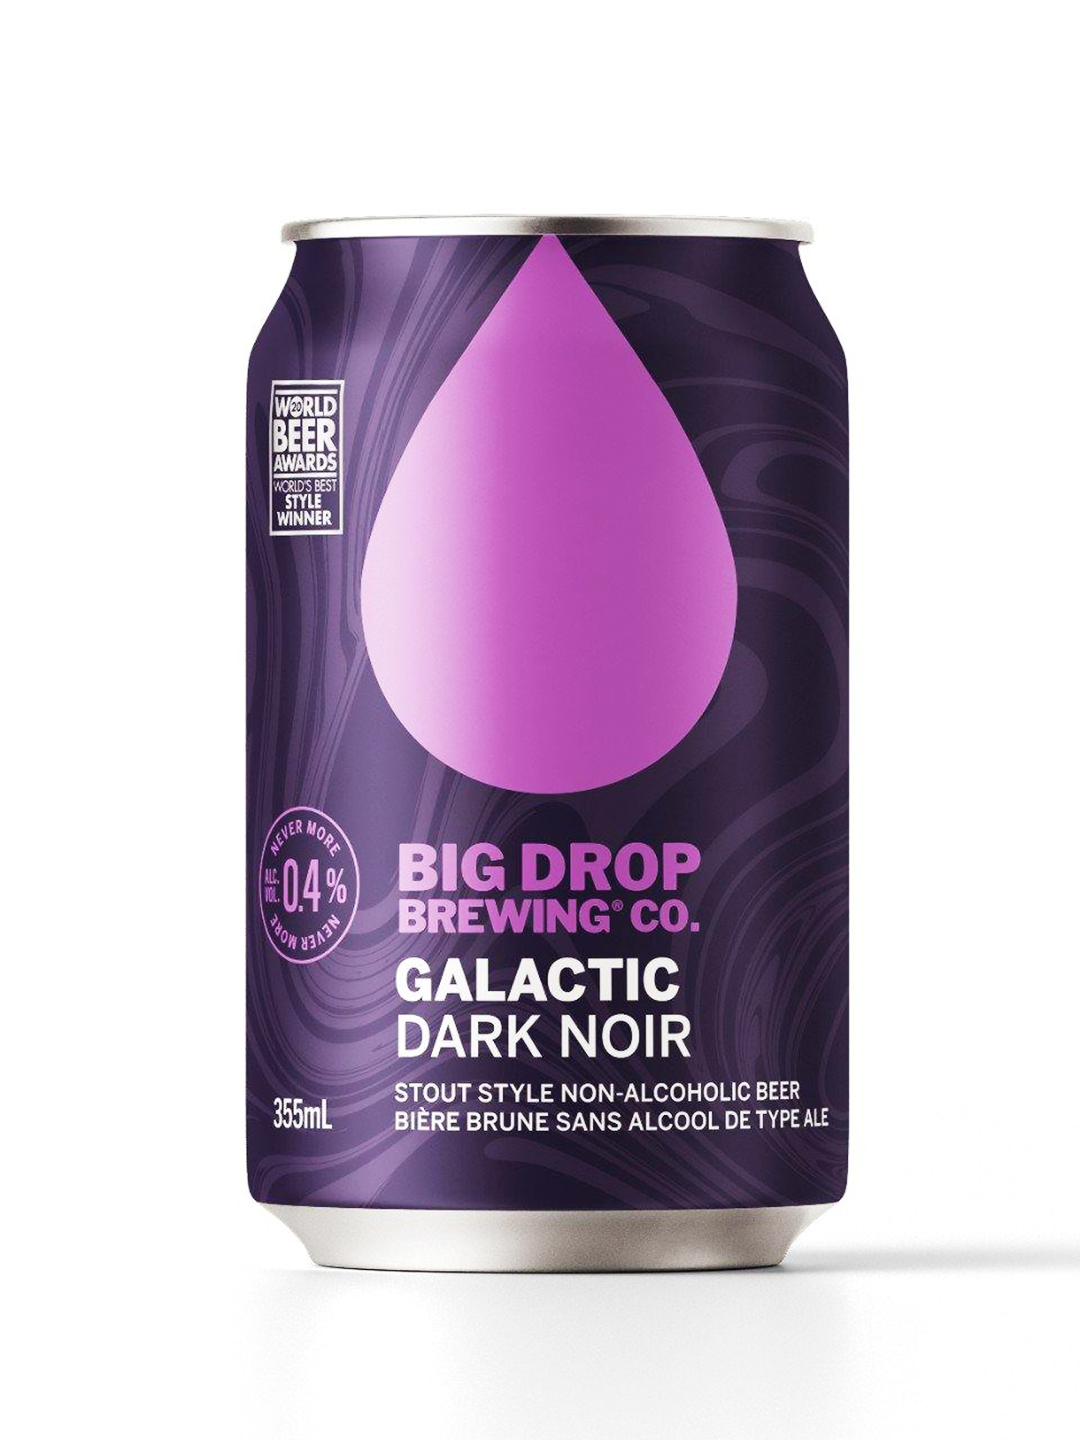 Big Drop Brewing Co Galactic Dark Noir.